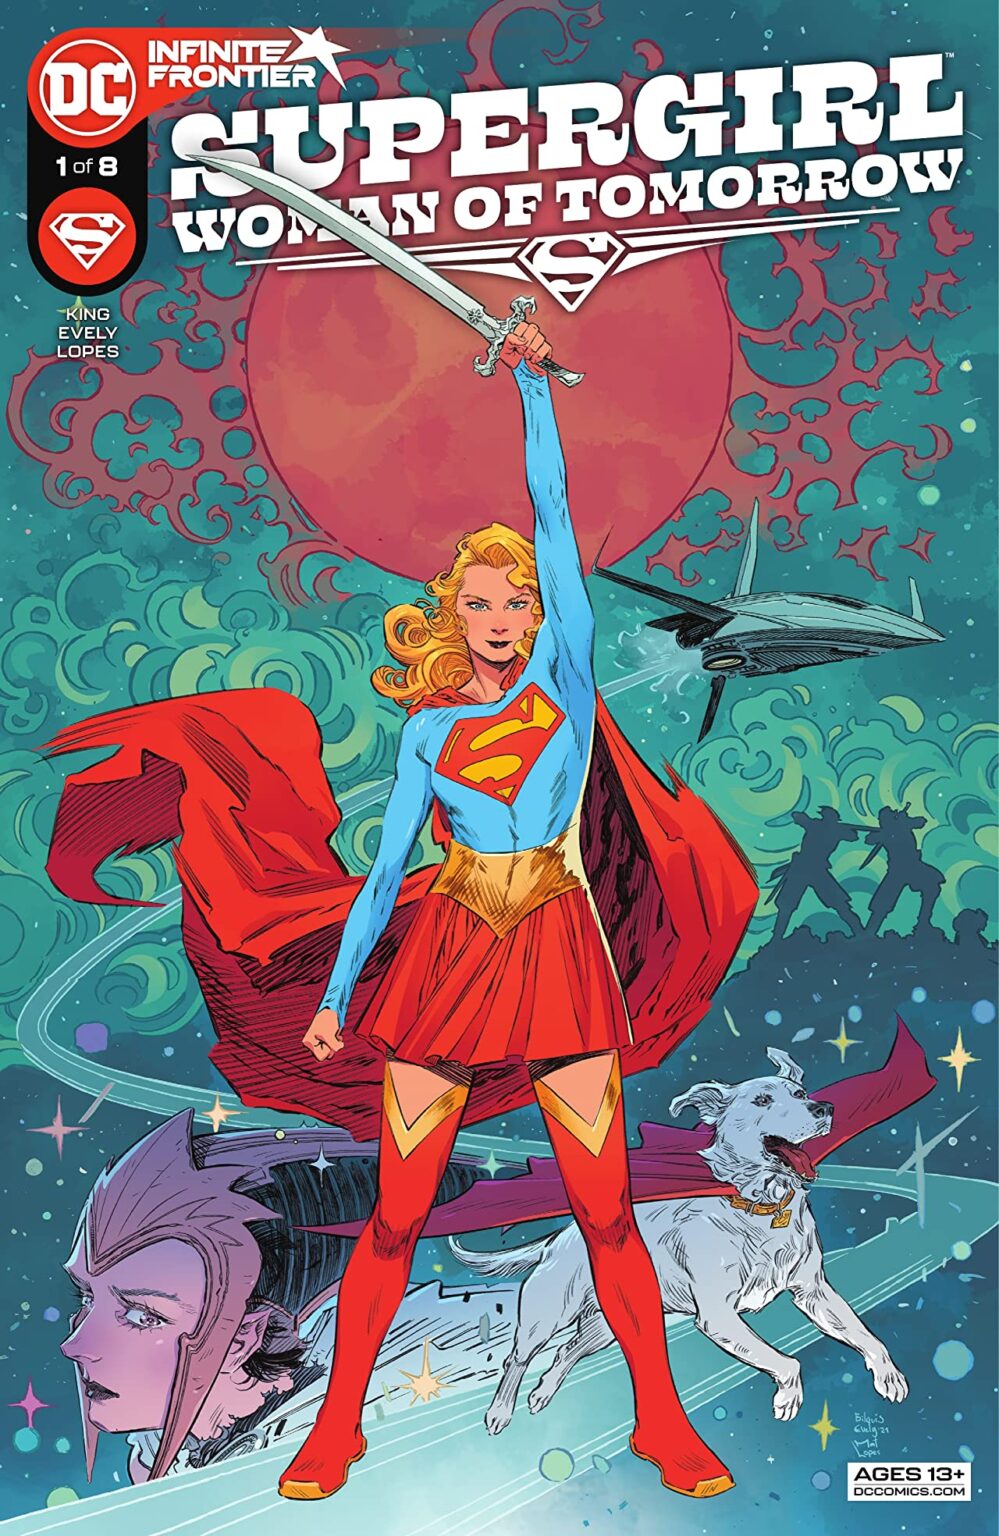 15 - Les comics que vous lisez en ce moment - Page 19 Supergirl-999x1536